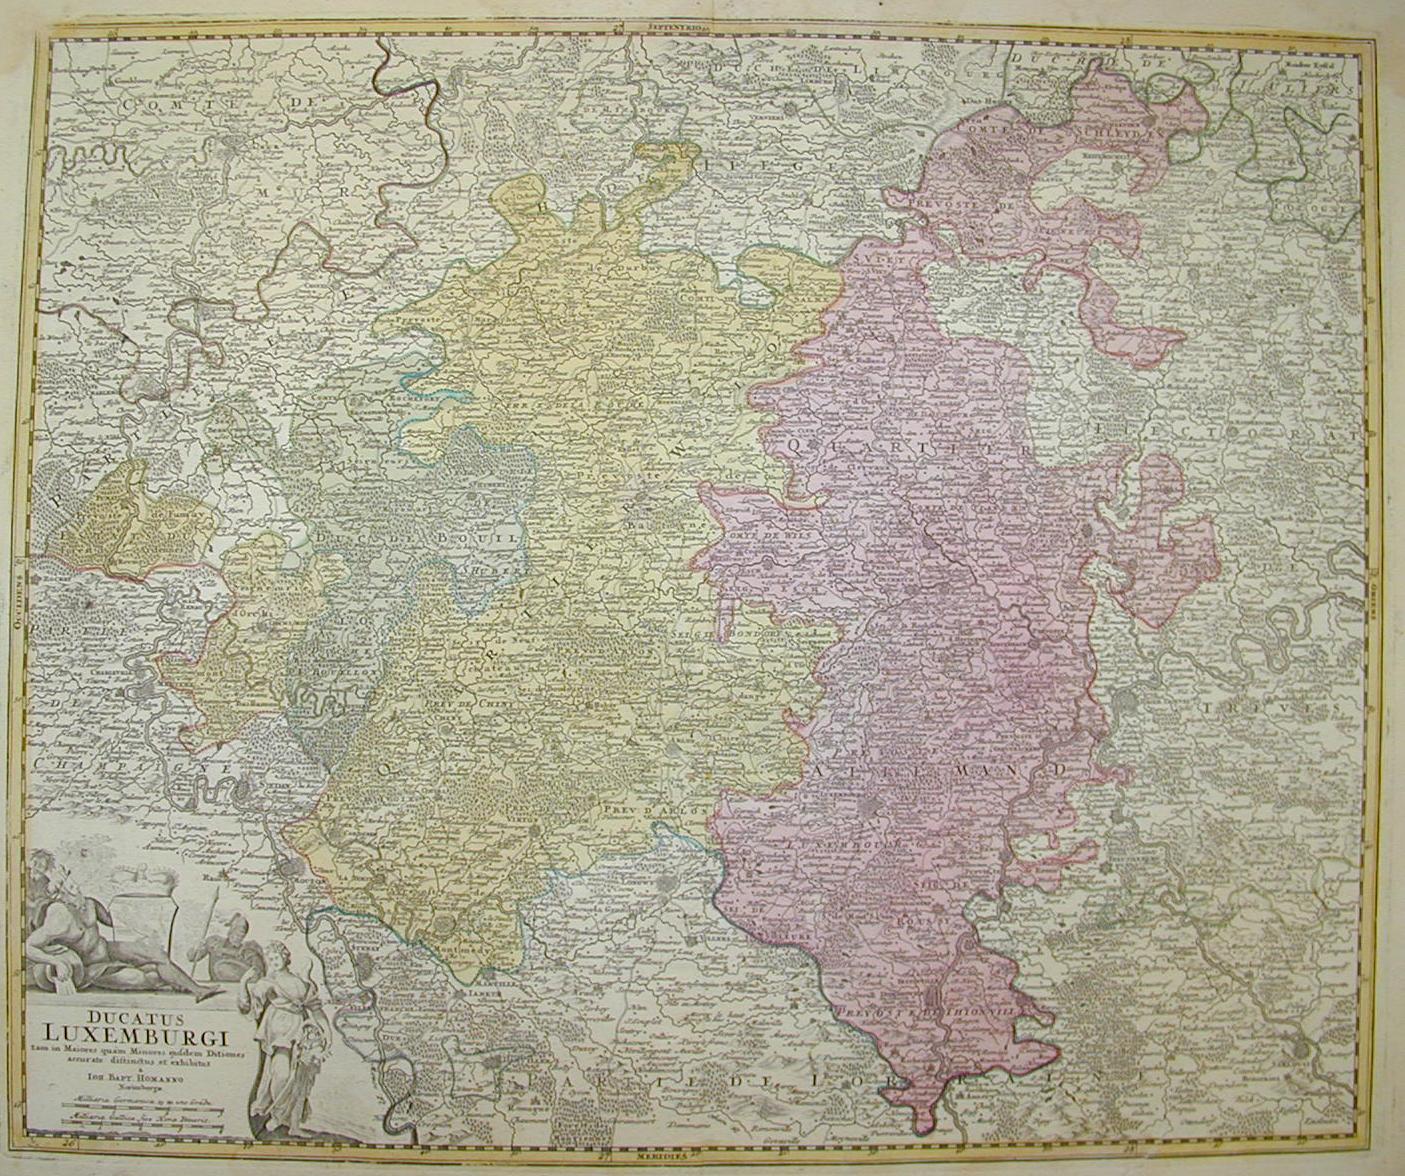 Ducato di Lussemburgo 1750 ca.